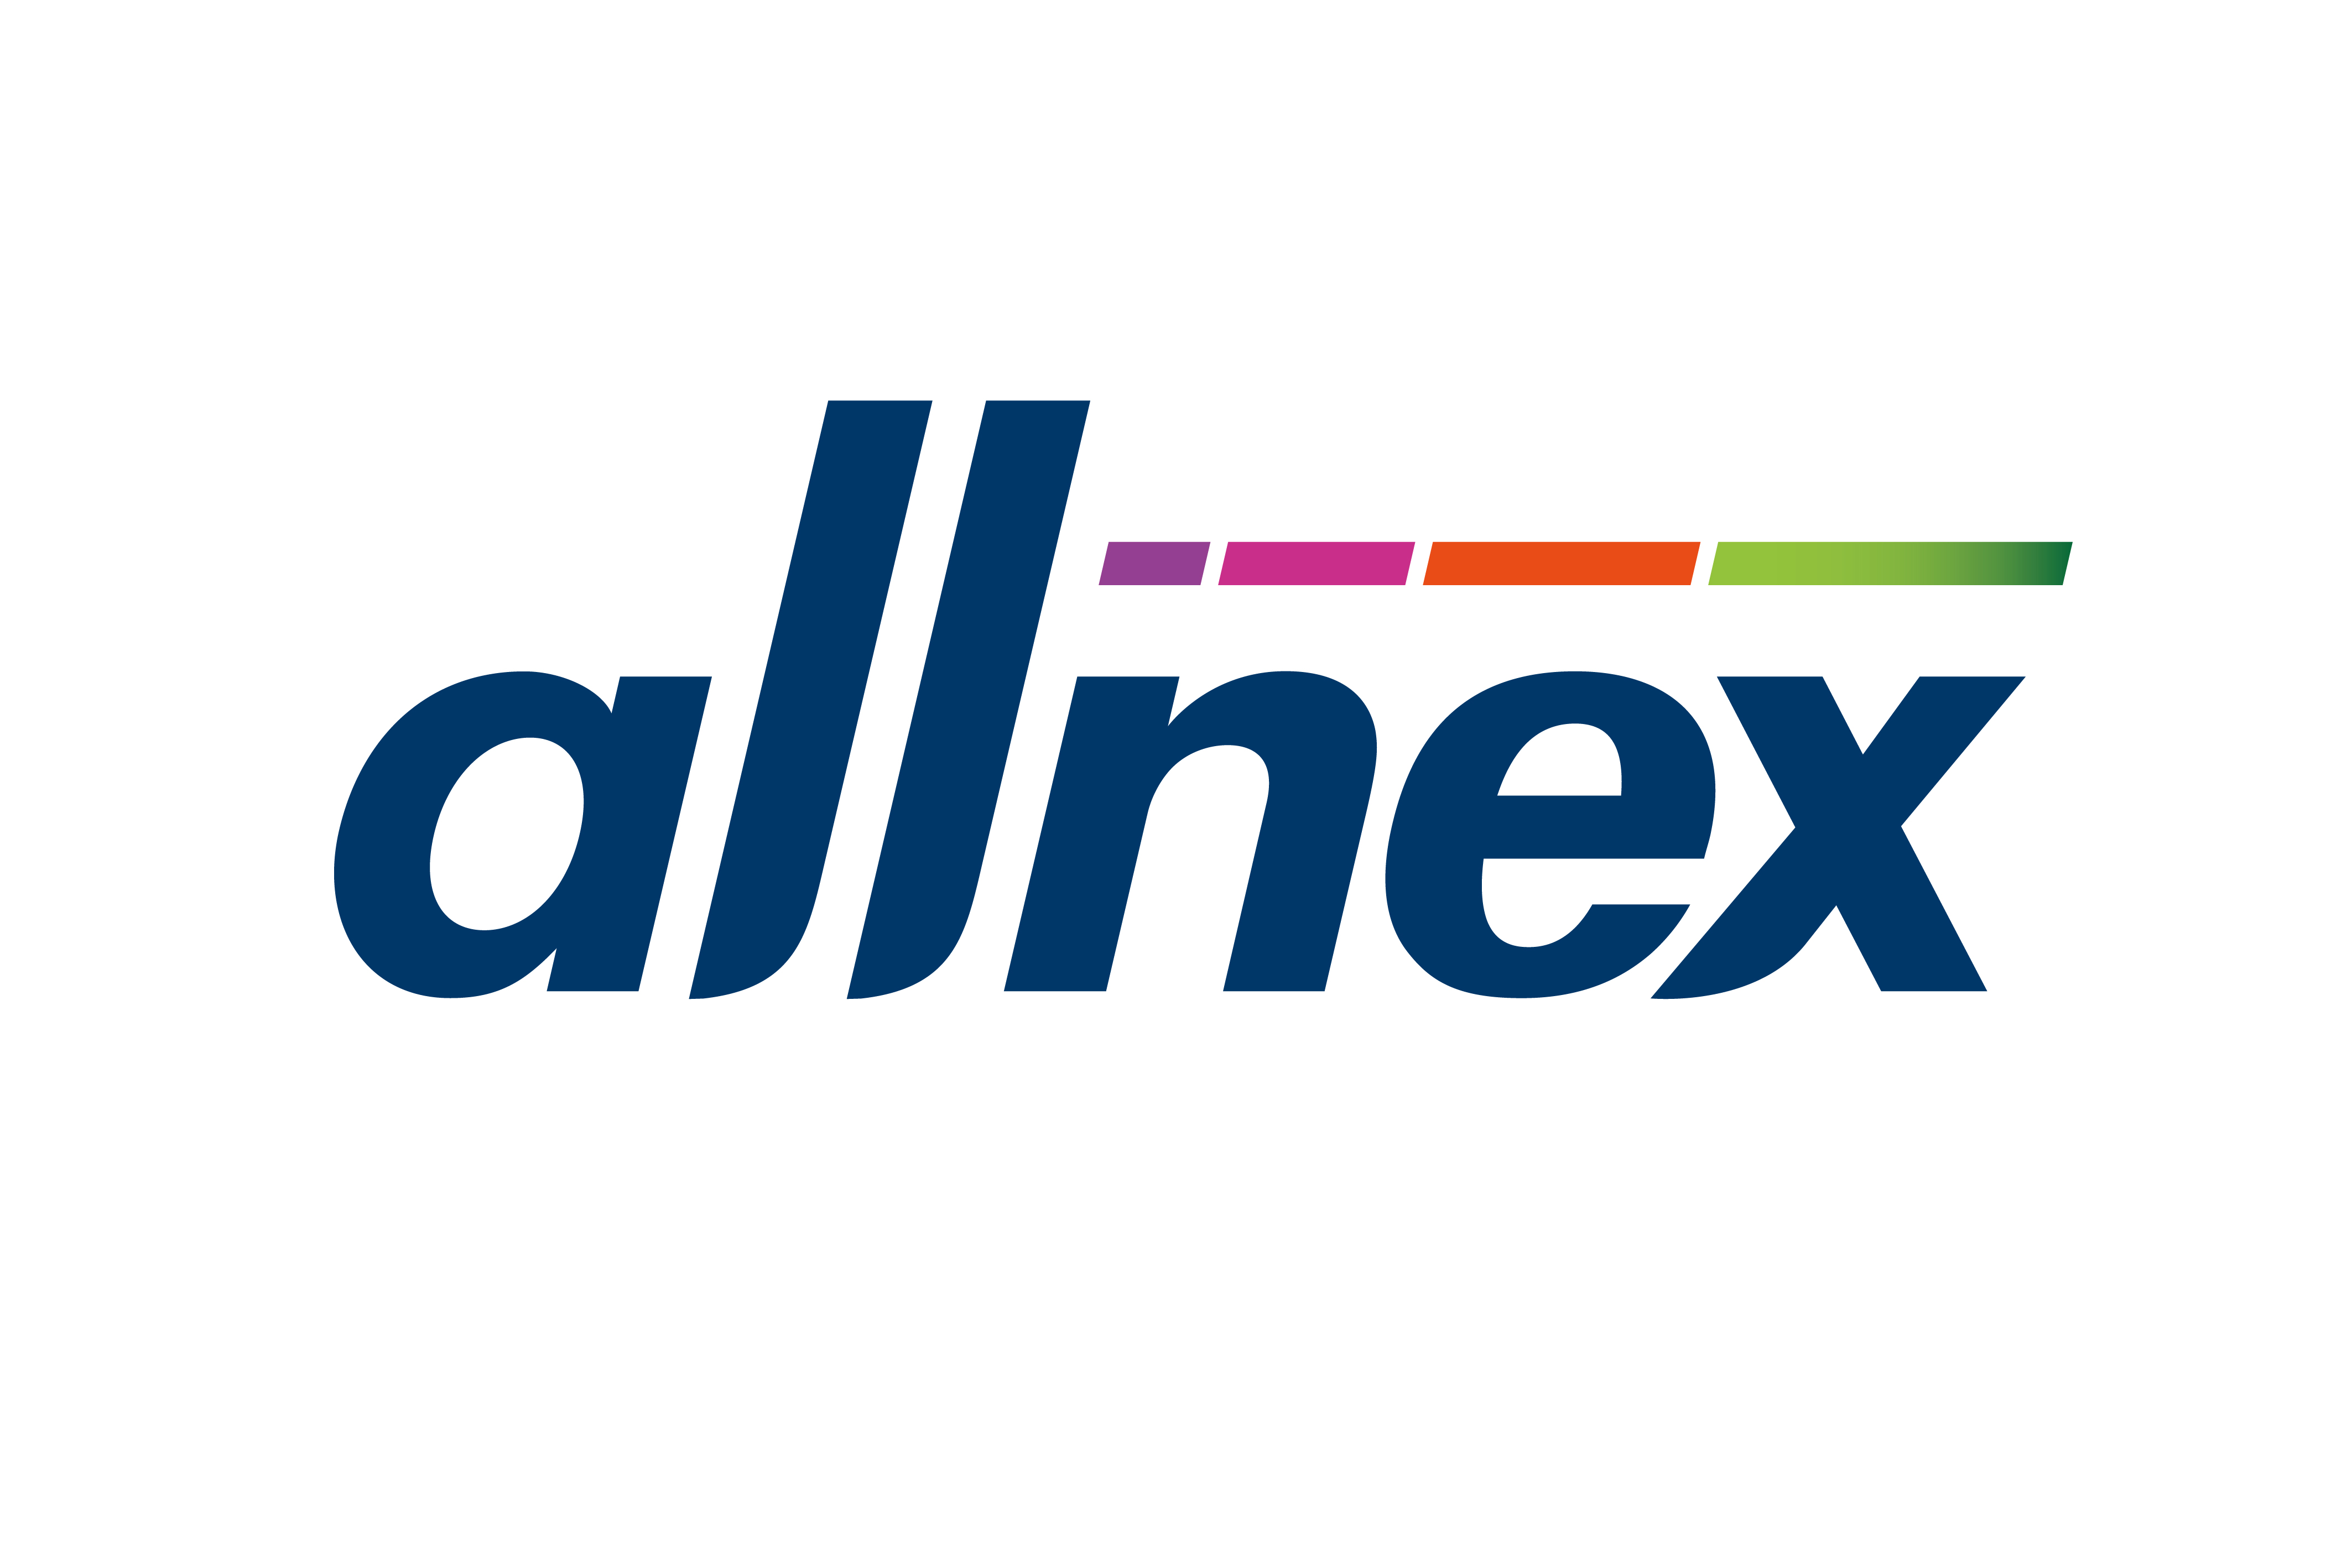 Allnex